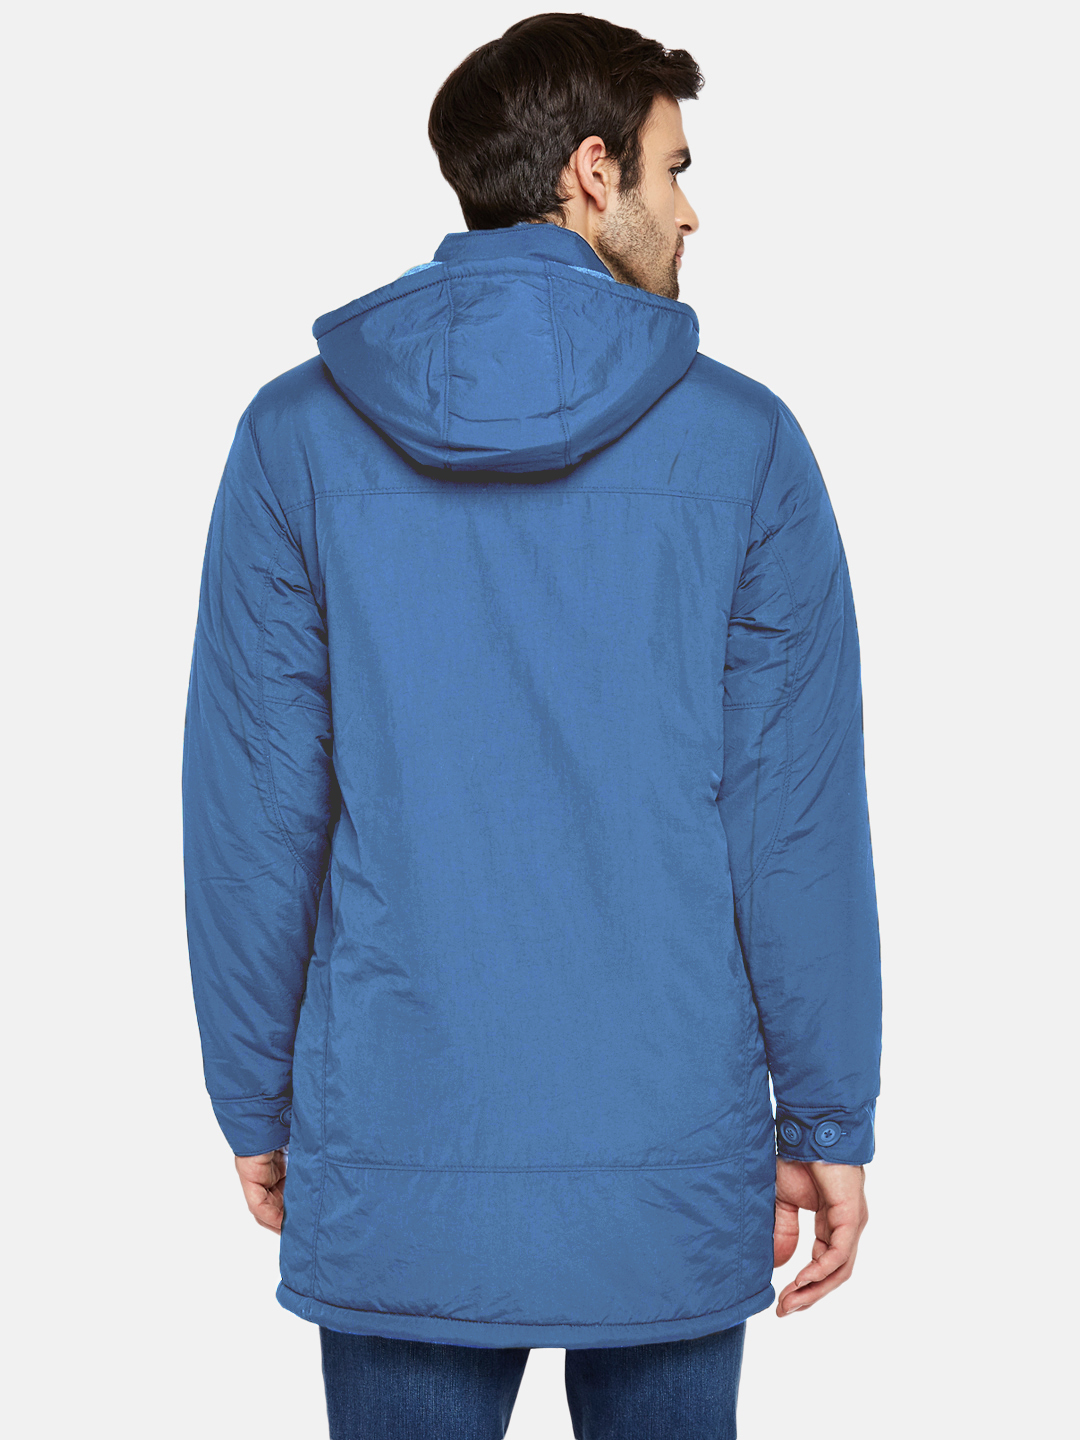 Persian Blue Fleece Lined Hooded Parka Jacket | Men